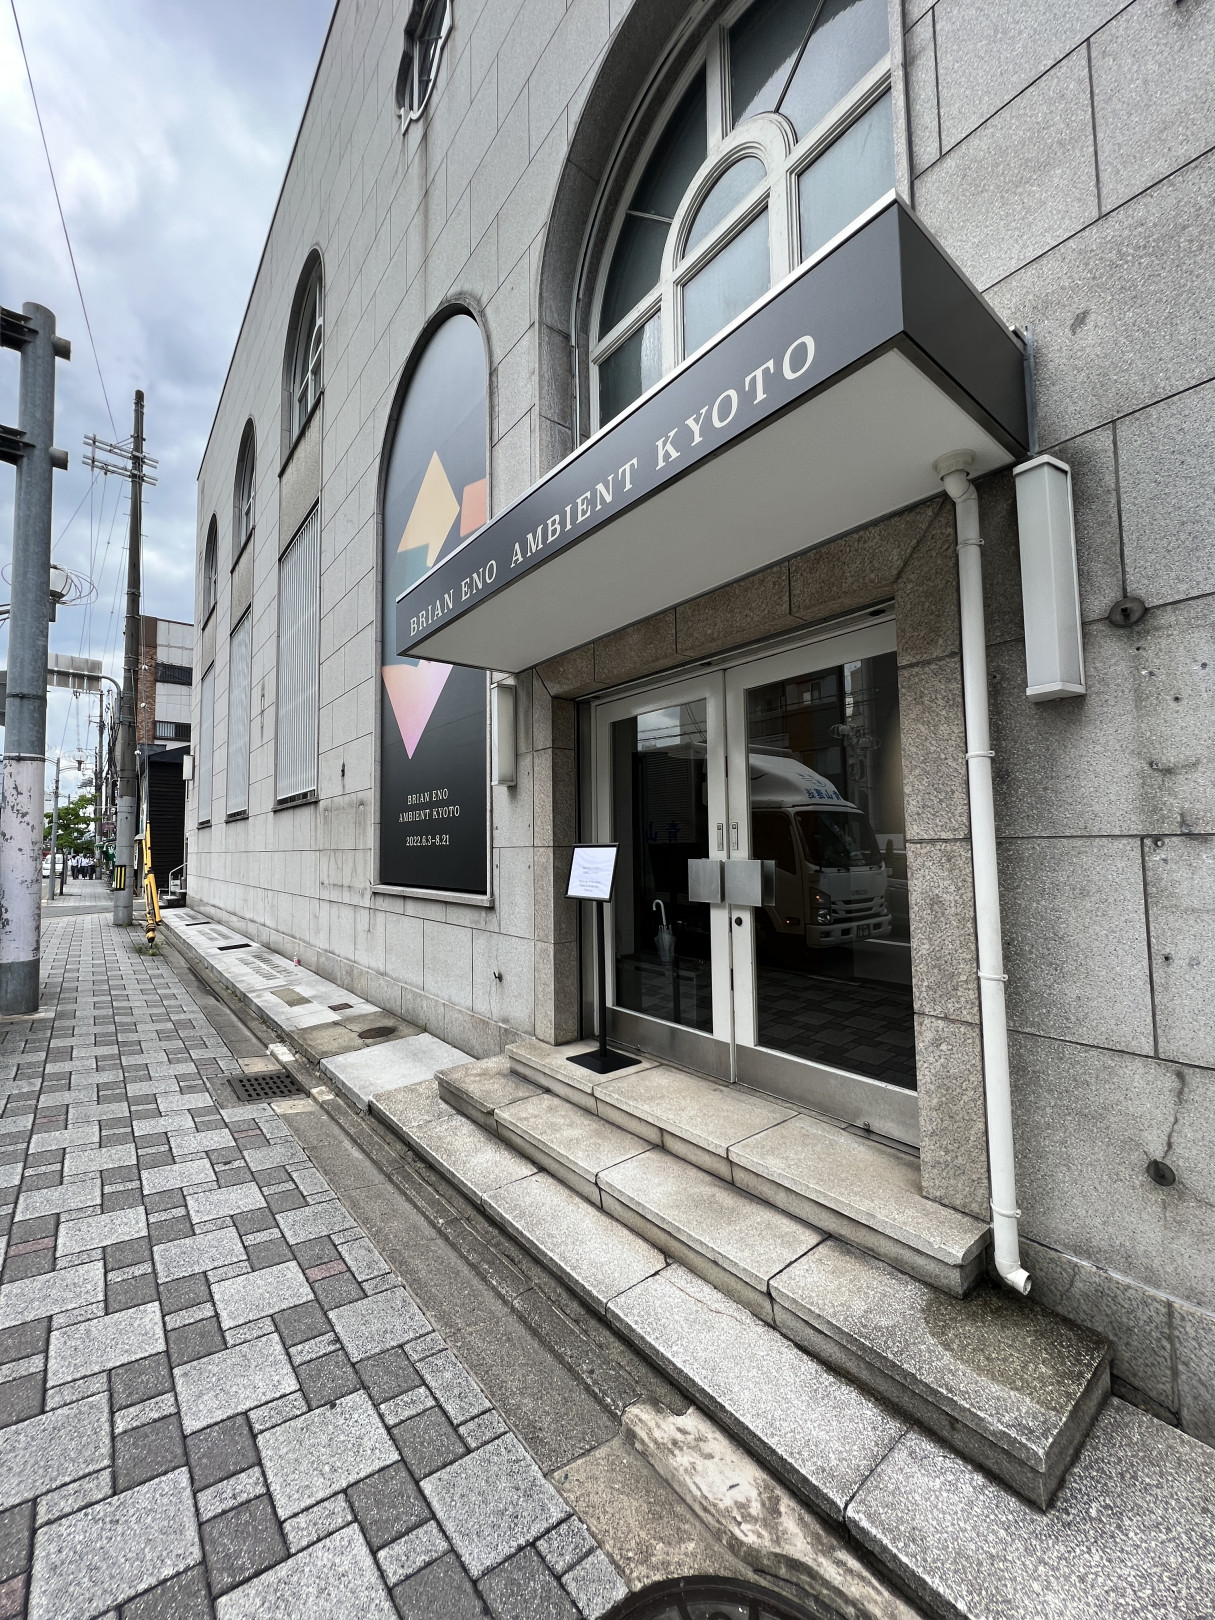 9月3日まで会期が延長された「BRIAN ENO AMBIENT KYOTO」の会場・京都中央信用金庫旧厚生センター外観